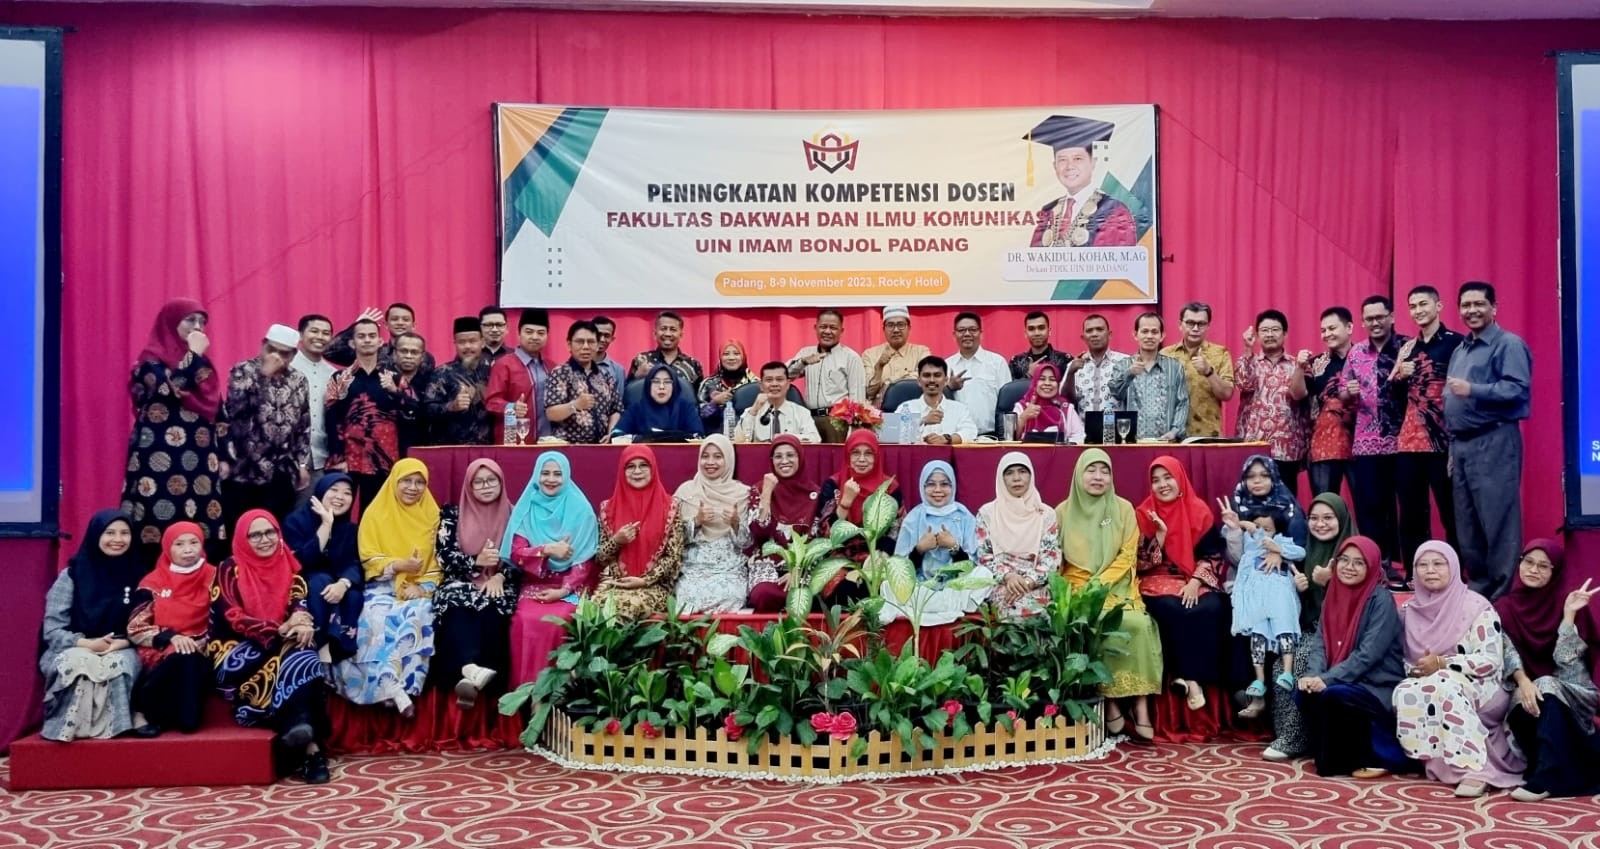 Workshop Peningkatan Kompetensi Dosen Fakultas Dakwah dan Ilmu Komunikasi UIN IB Padang